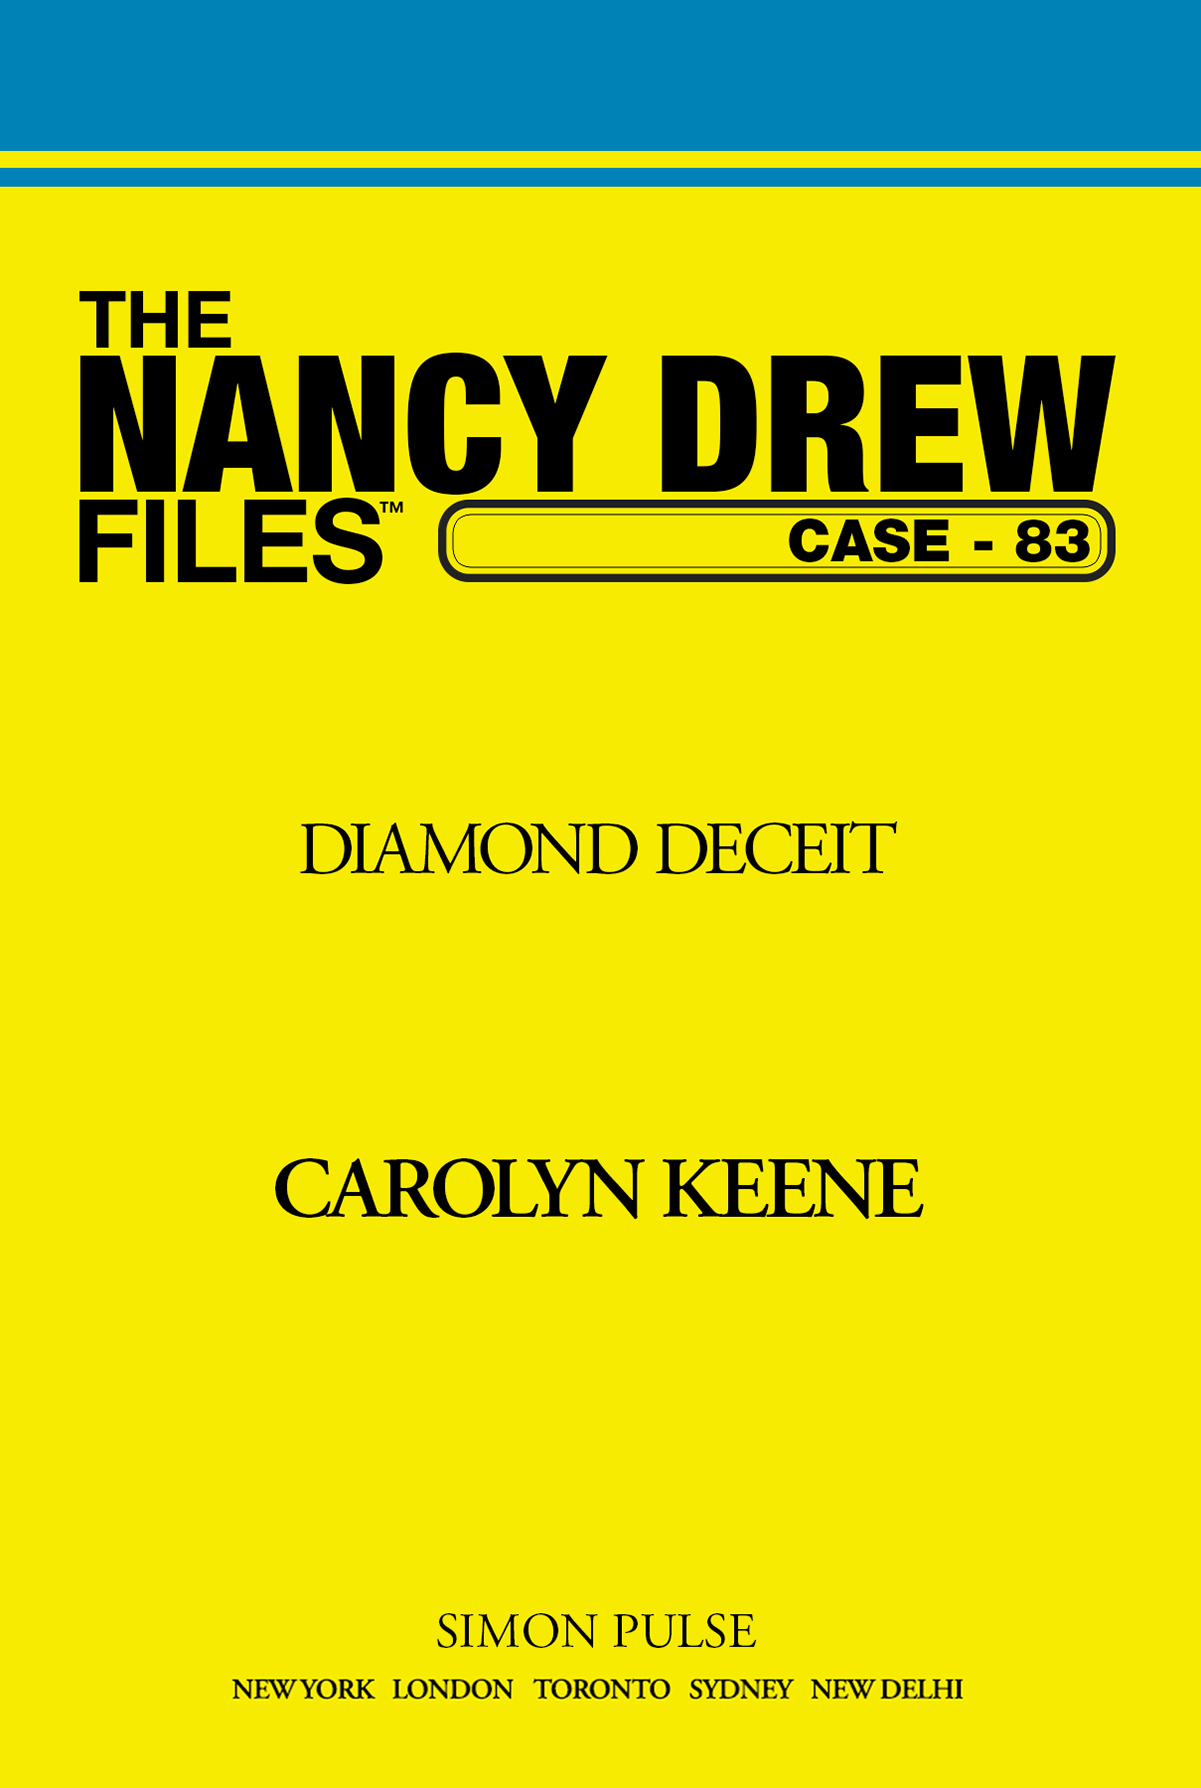 Diamond Deceit by Carolyn Keene